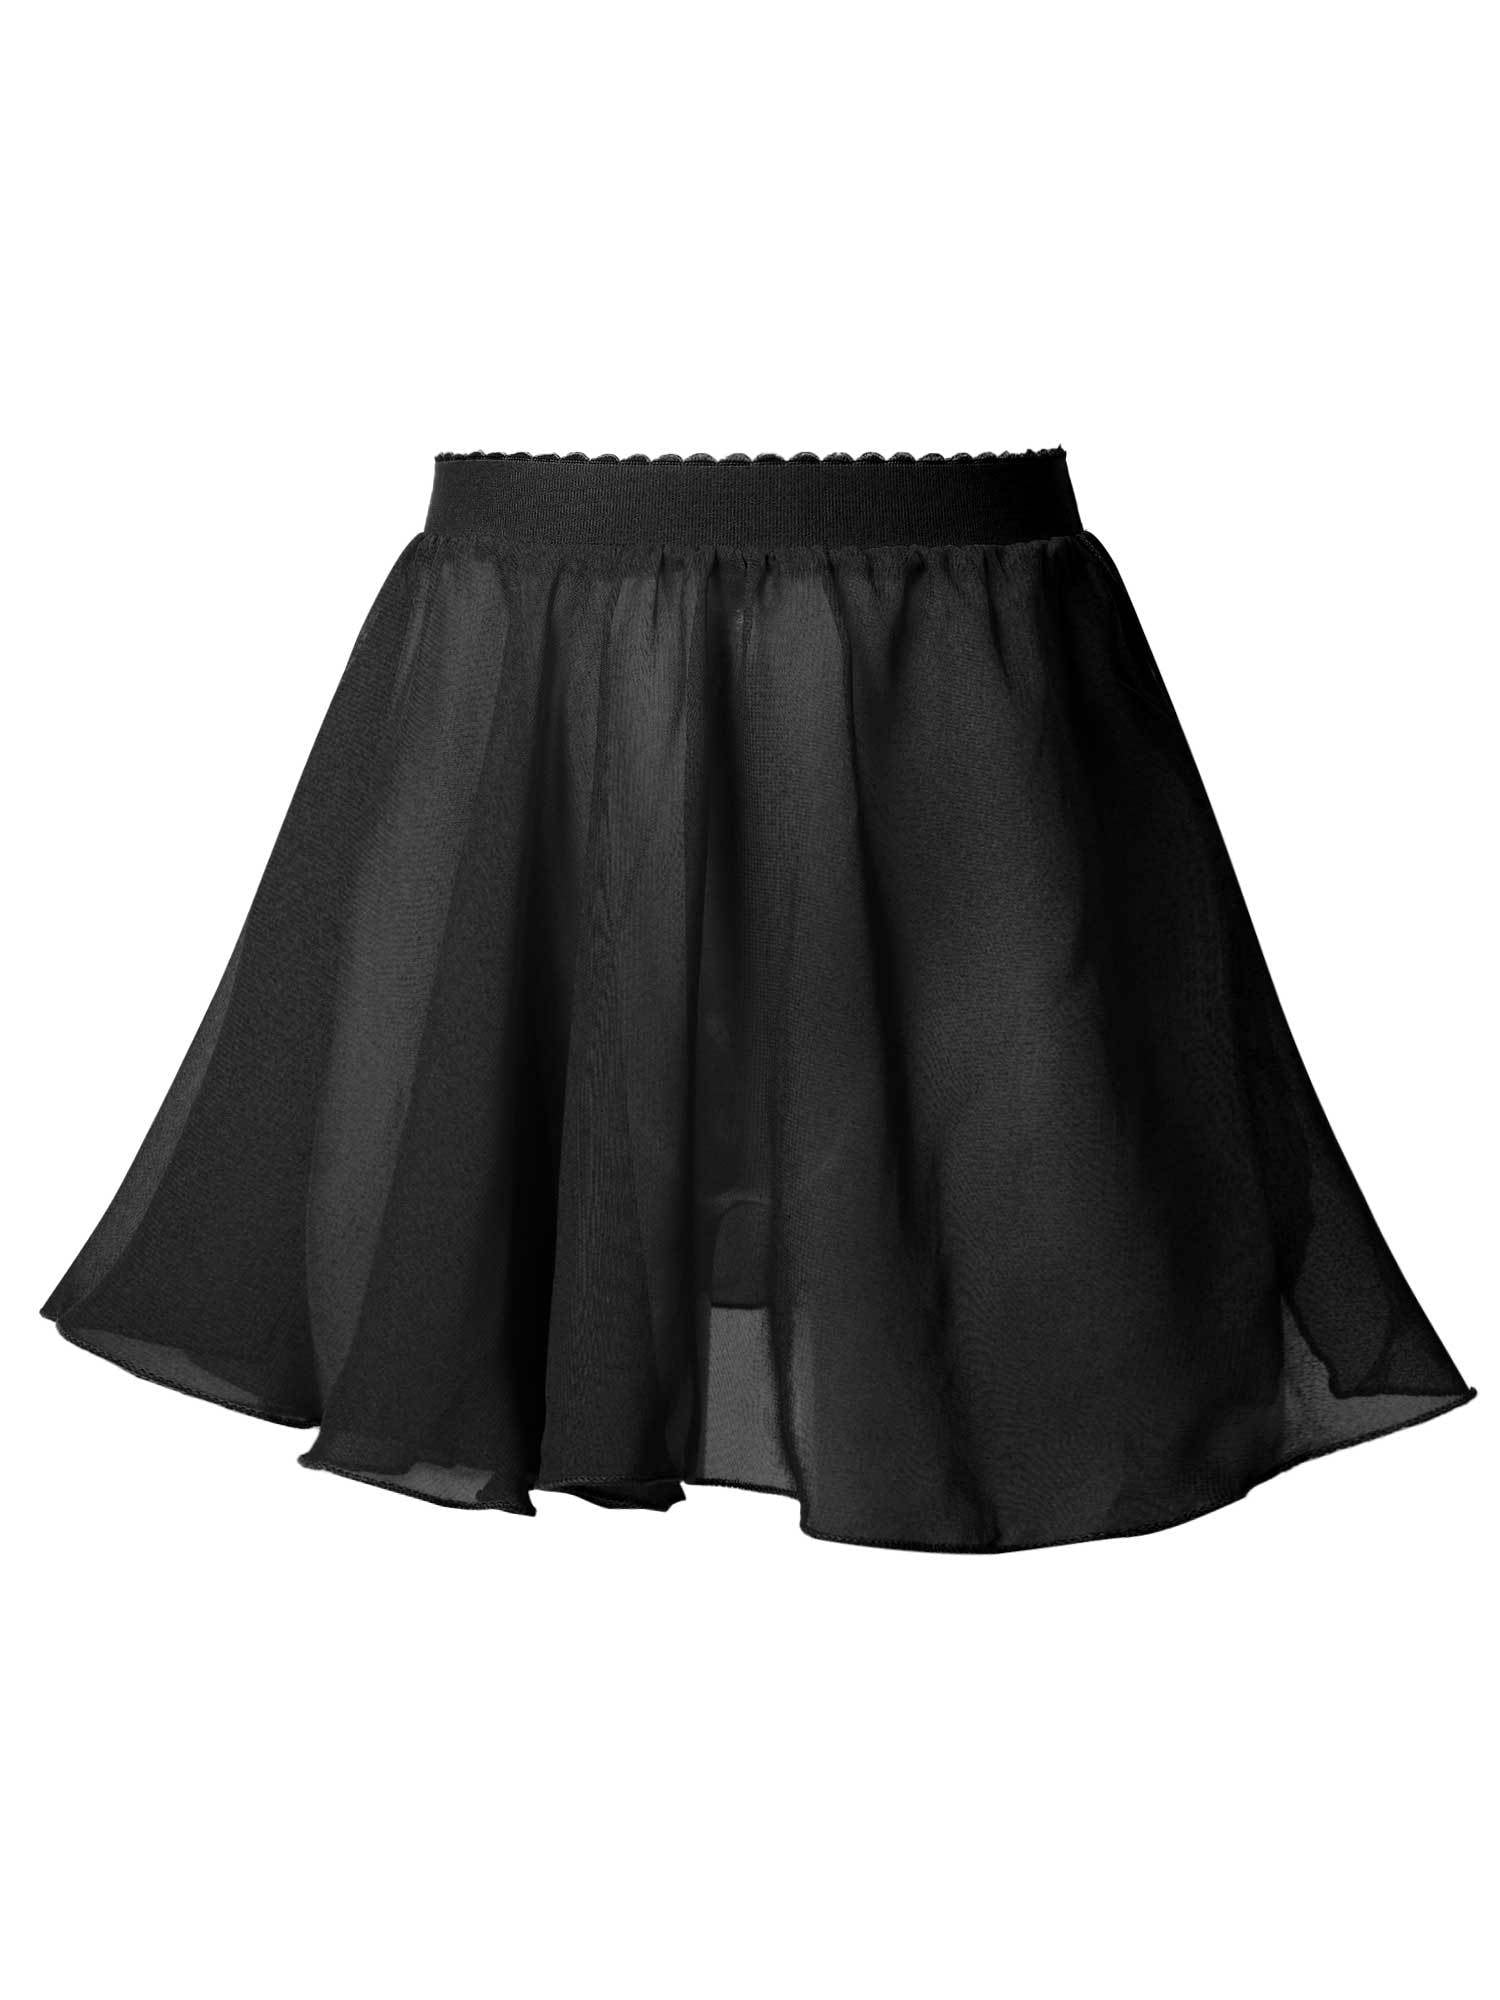 DPOIS Kids Girls Basic Chiffon Wrap Skirt Ballet Pull-On Skirt Black 3 ...